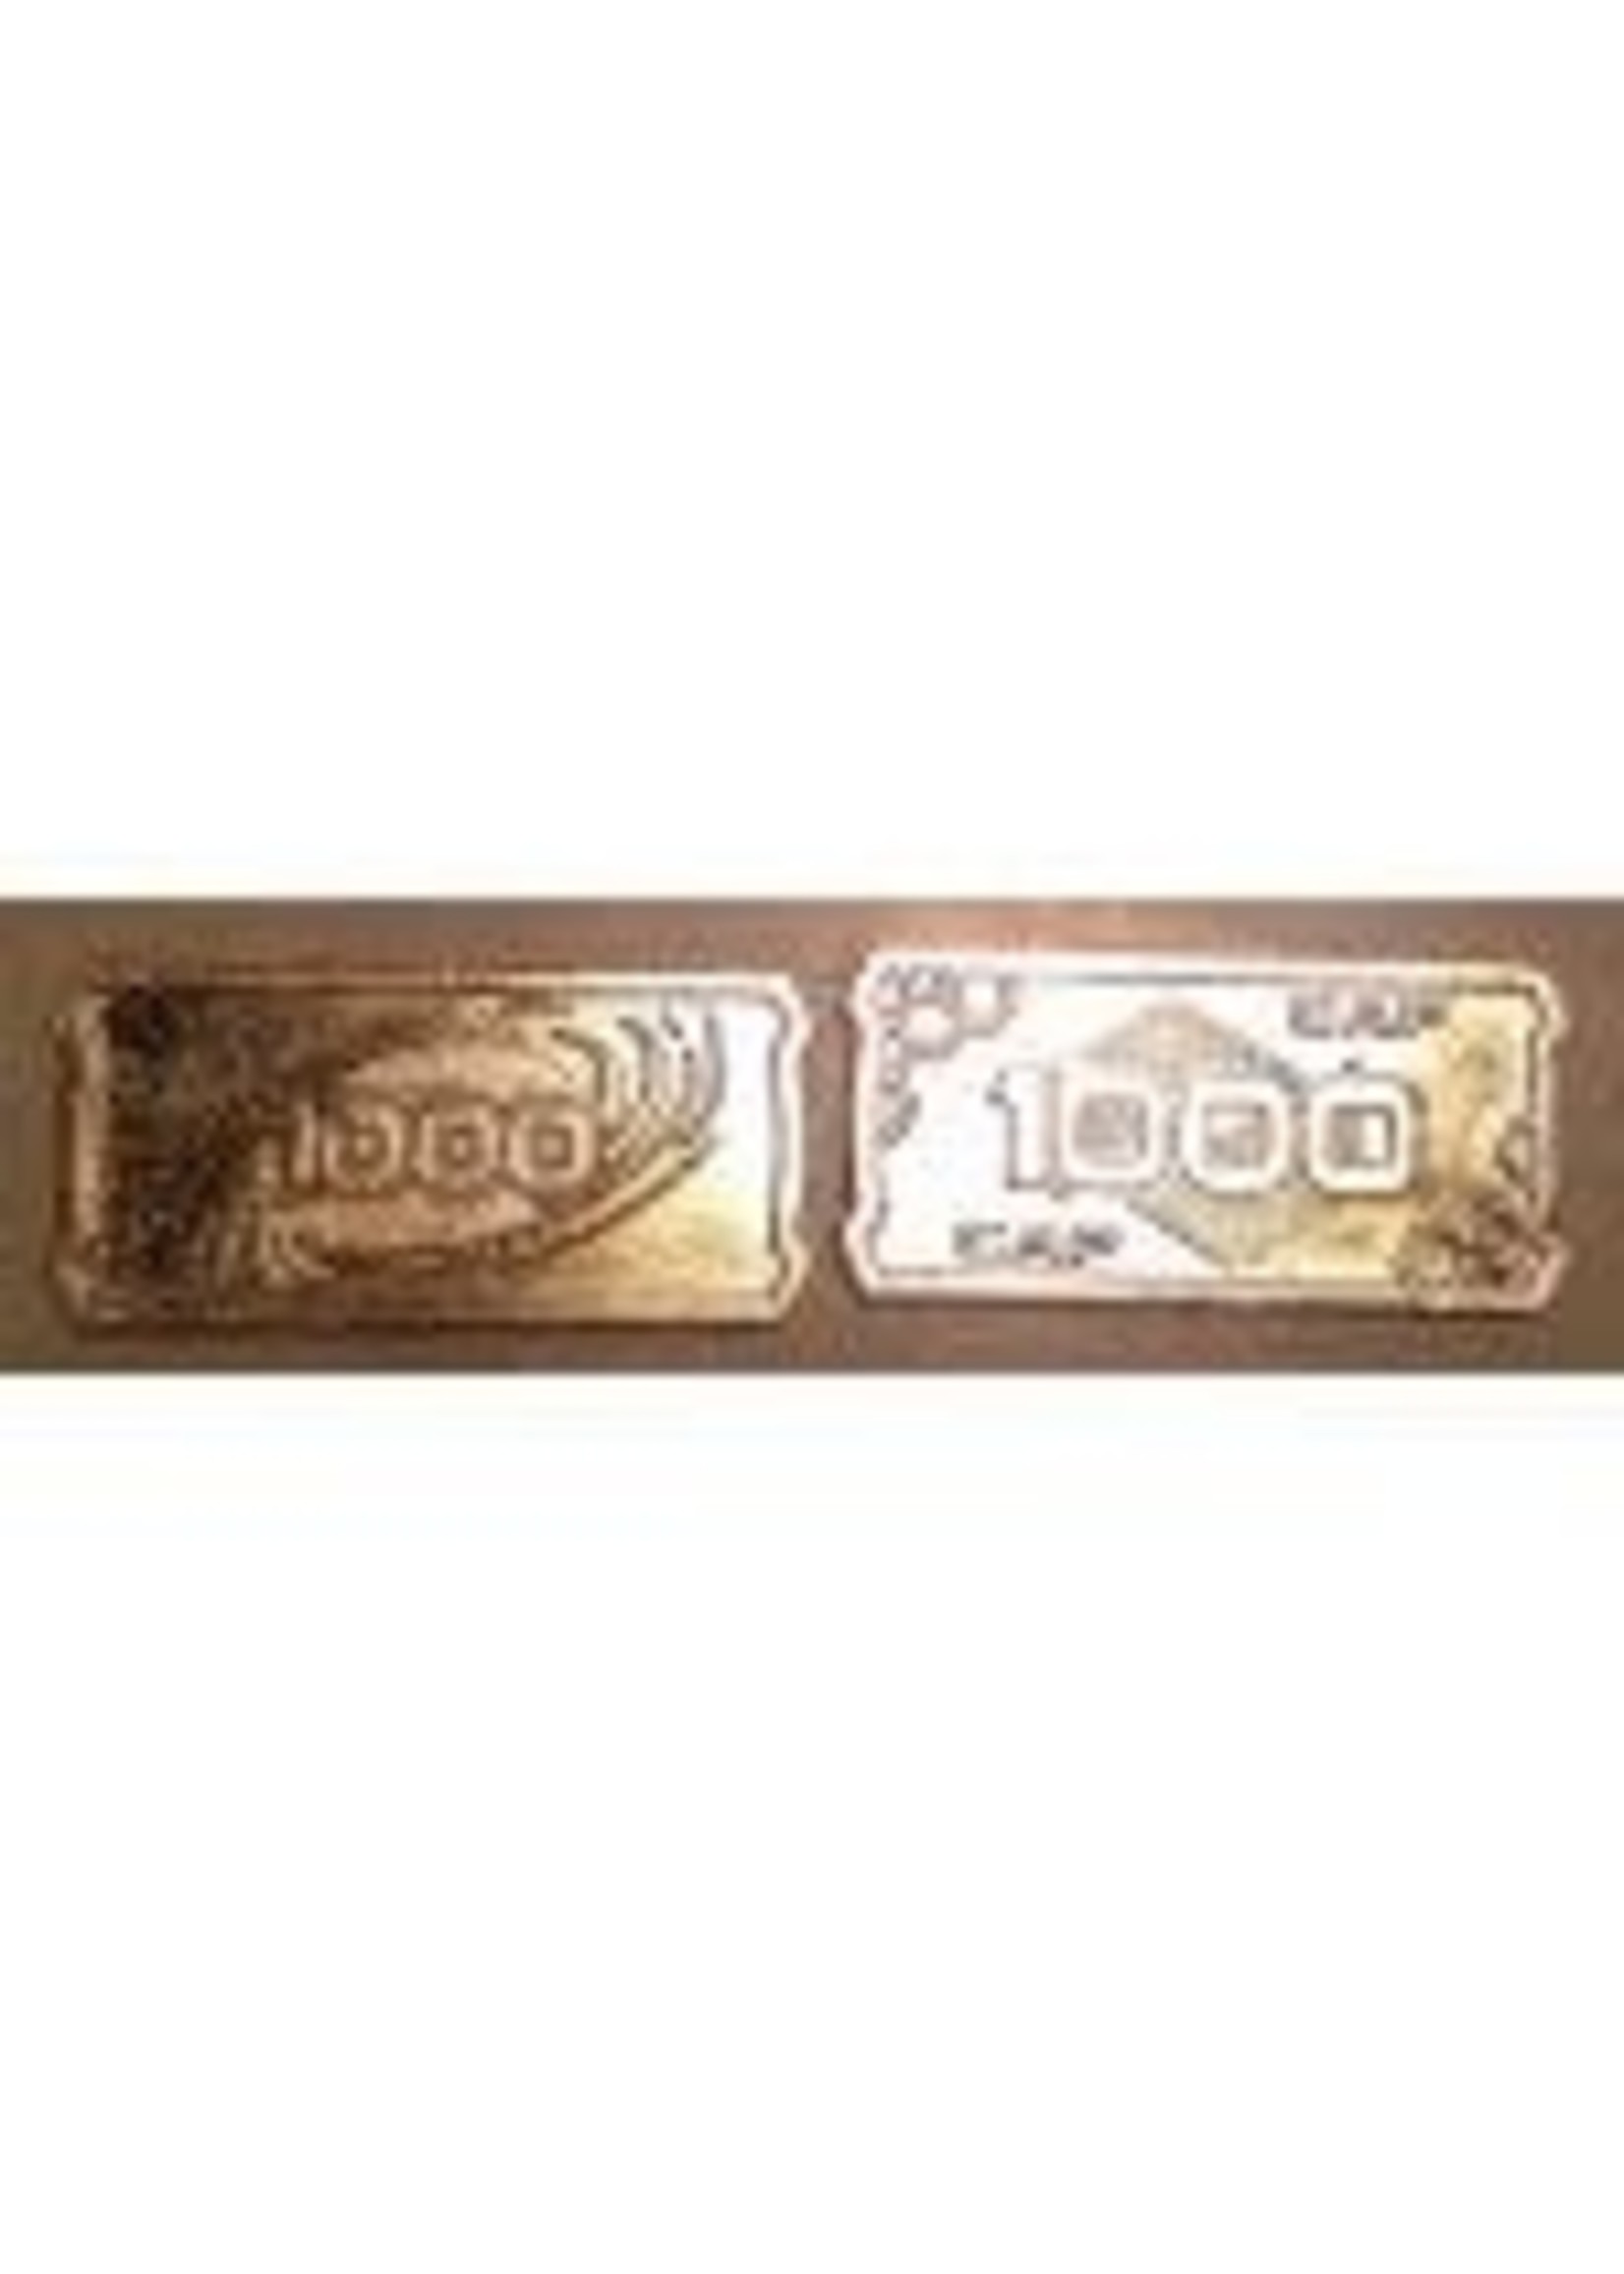 Minion Games Futuristic Metal Coins by Minion Games - 1000 CAP (10x)